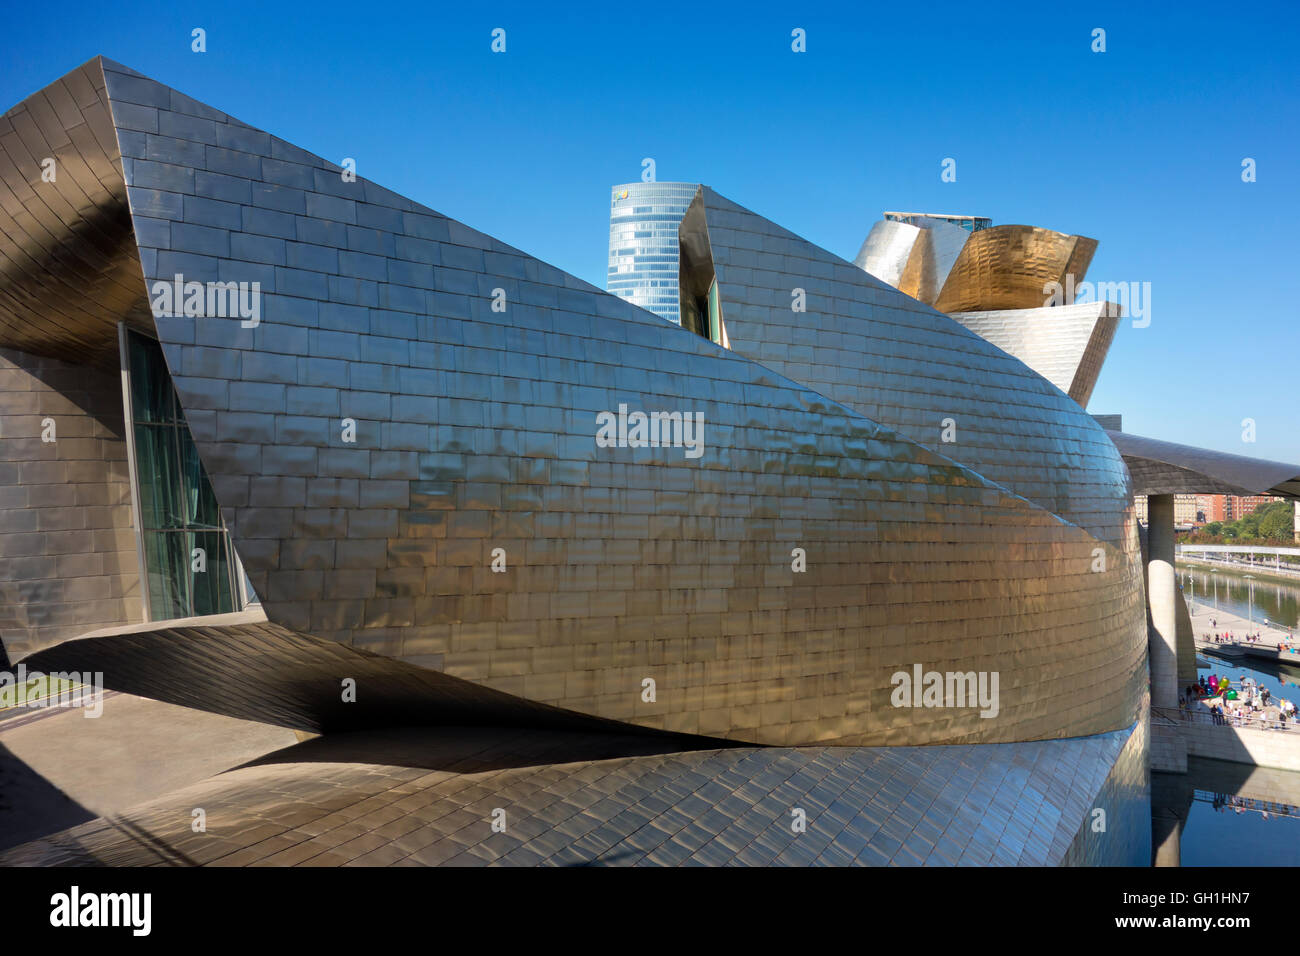 The iconic Guggenheim Museum in Bilbao, Spain 5 Stock Photo